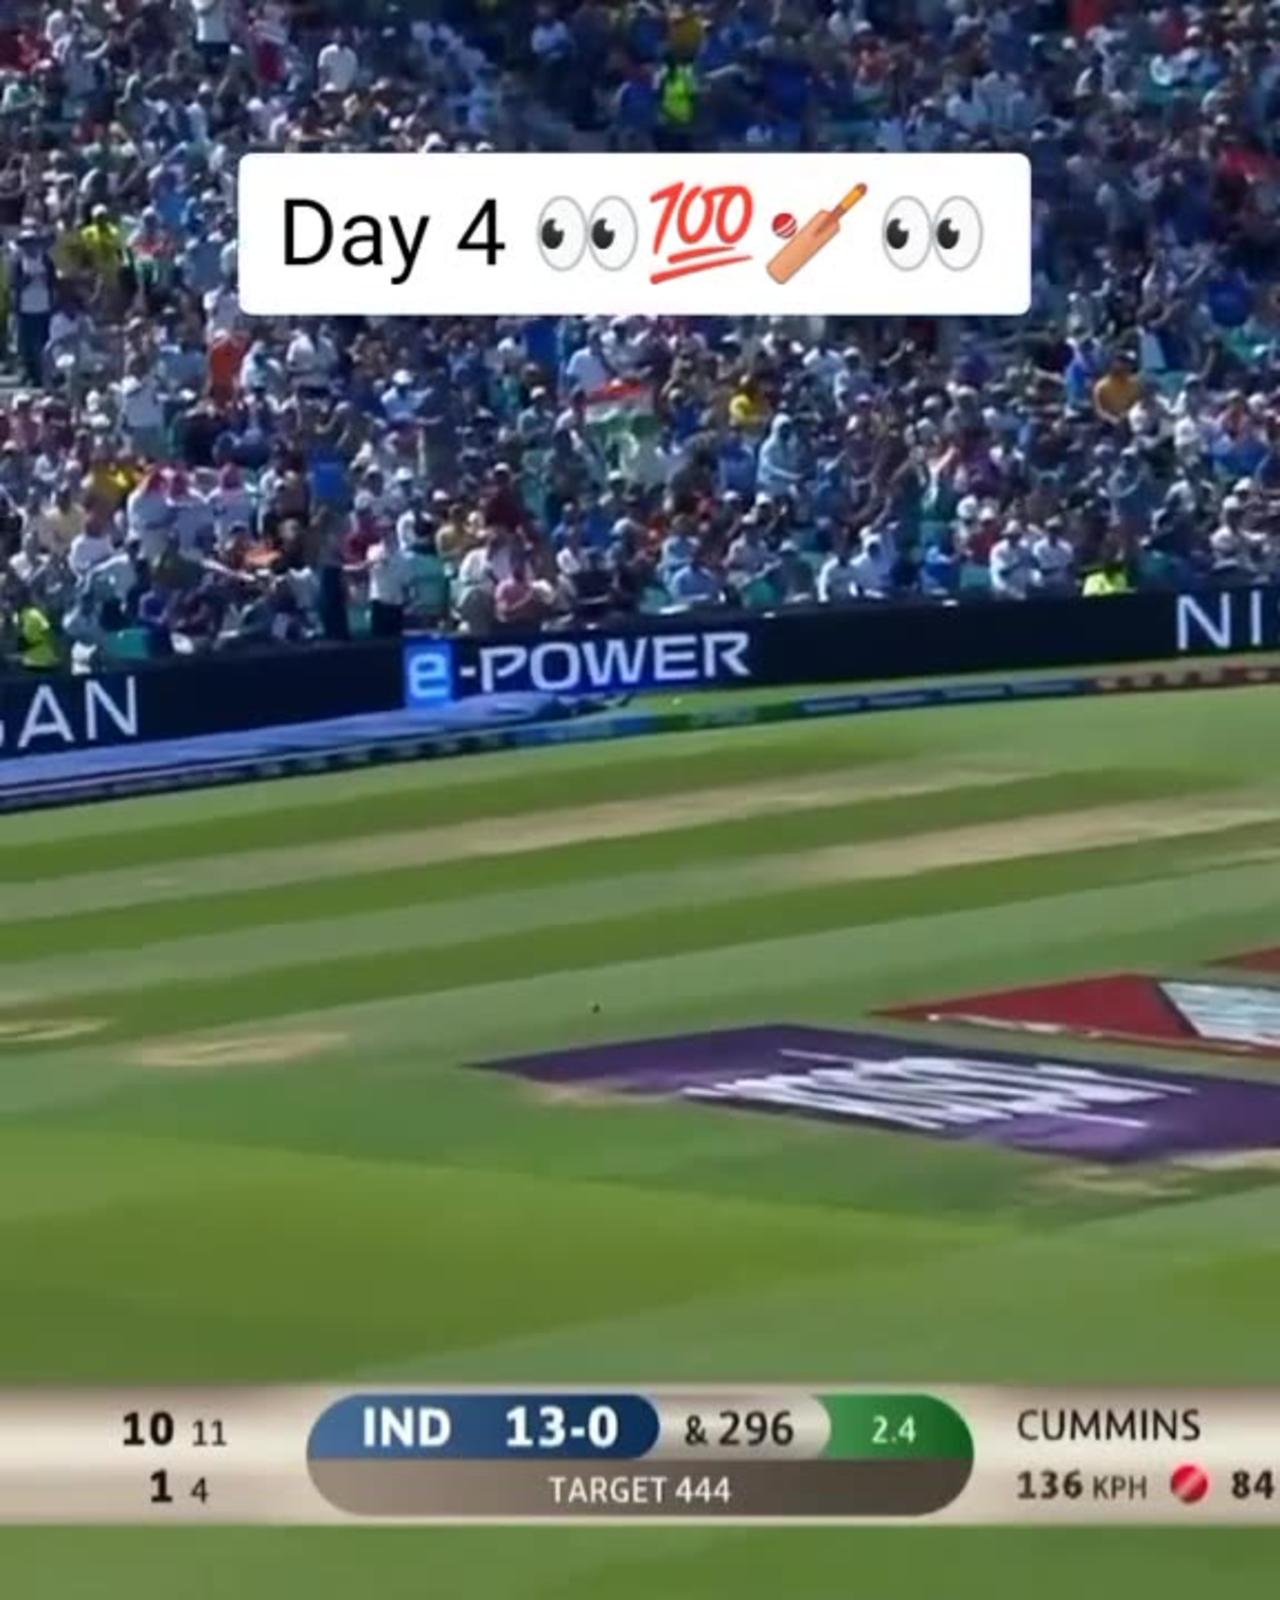 India vs Australia Day 4 world test championship